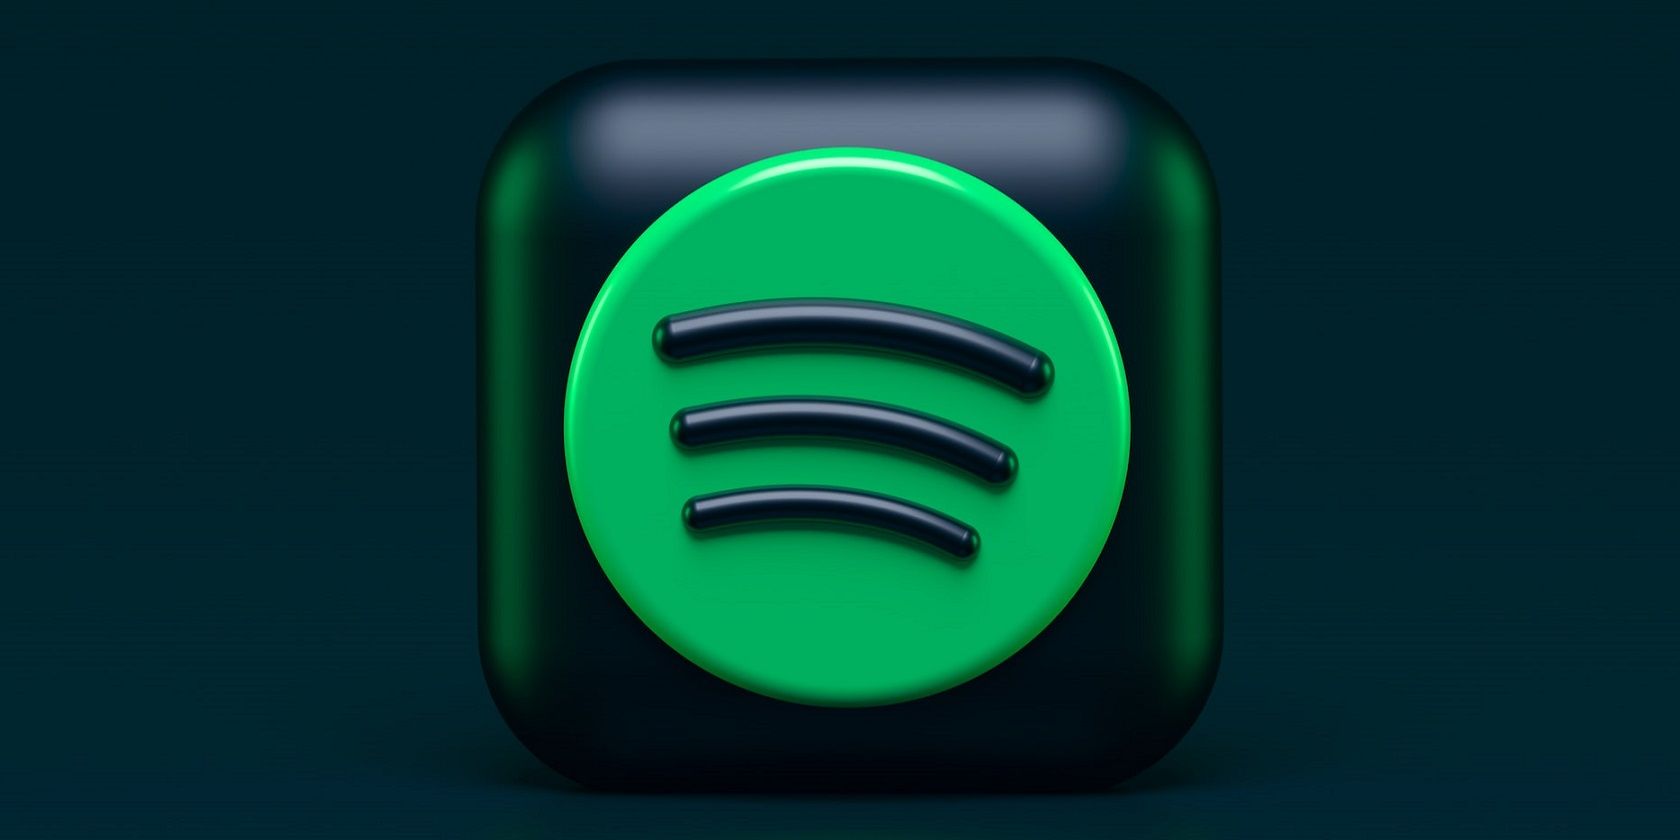 The Spotify logo 